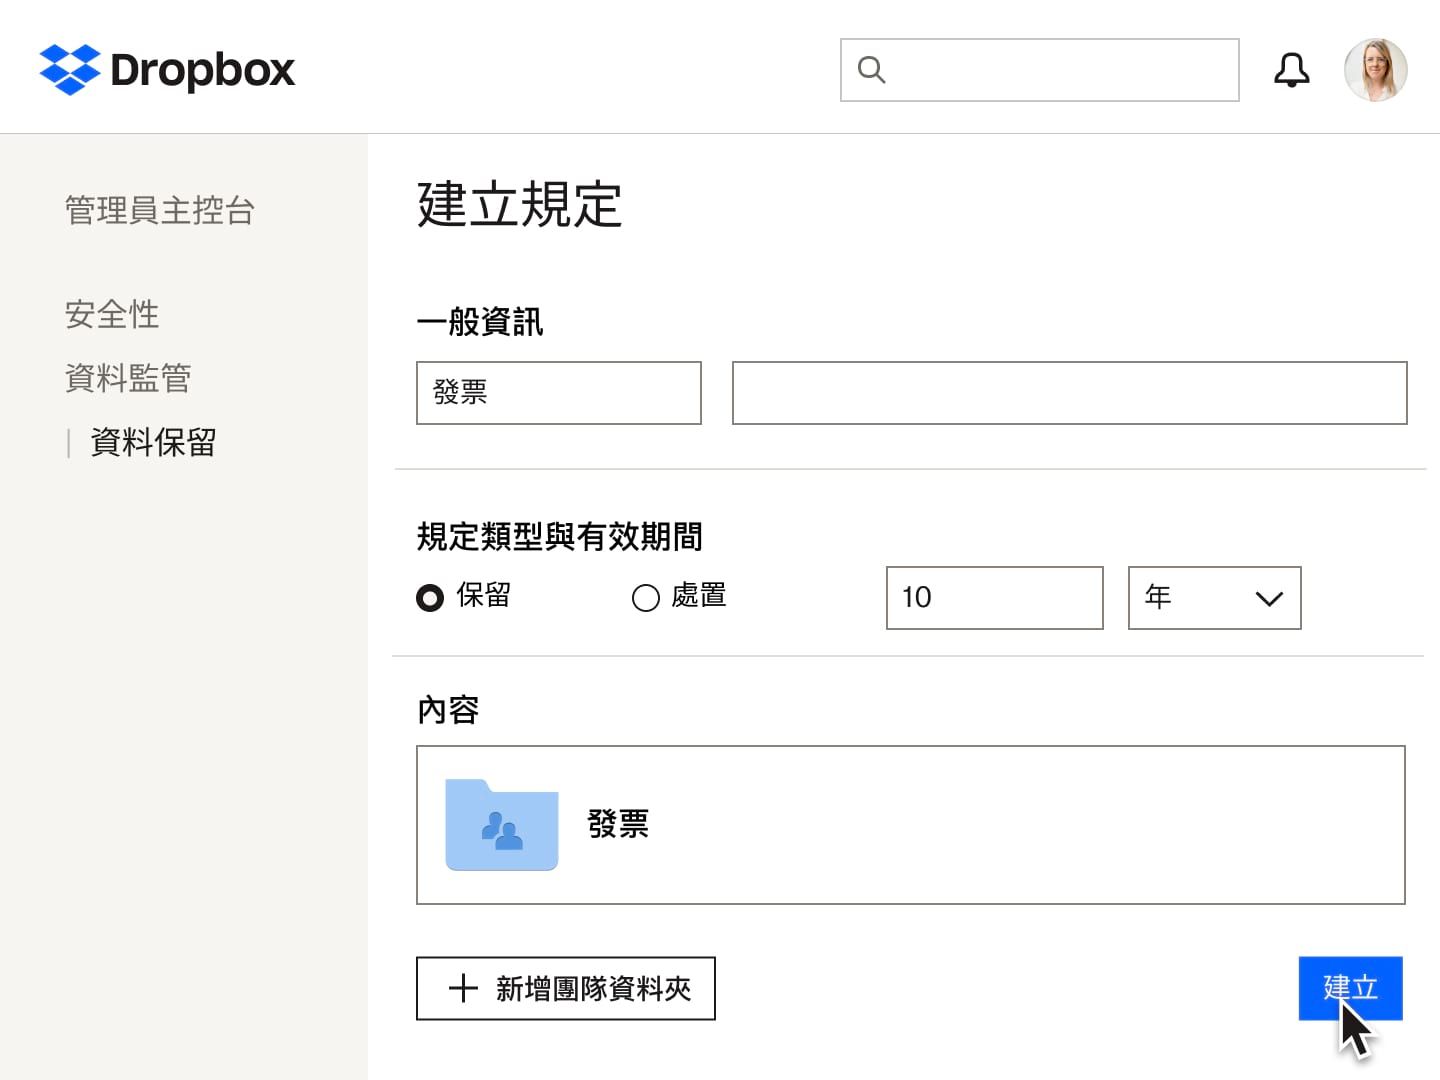 Dropbox 裡用來建立資料保留政策的表單欄位